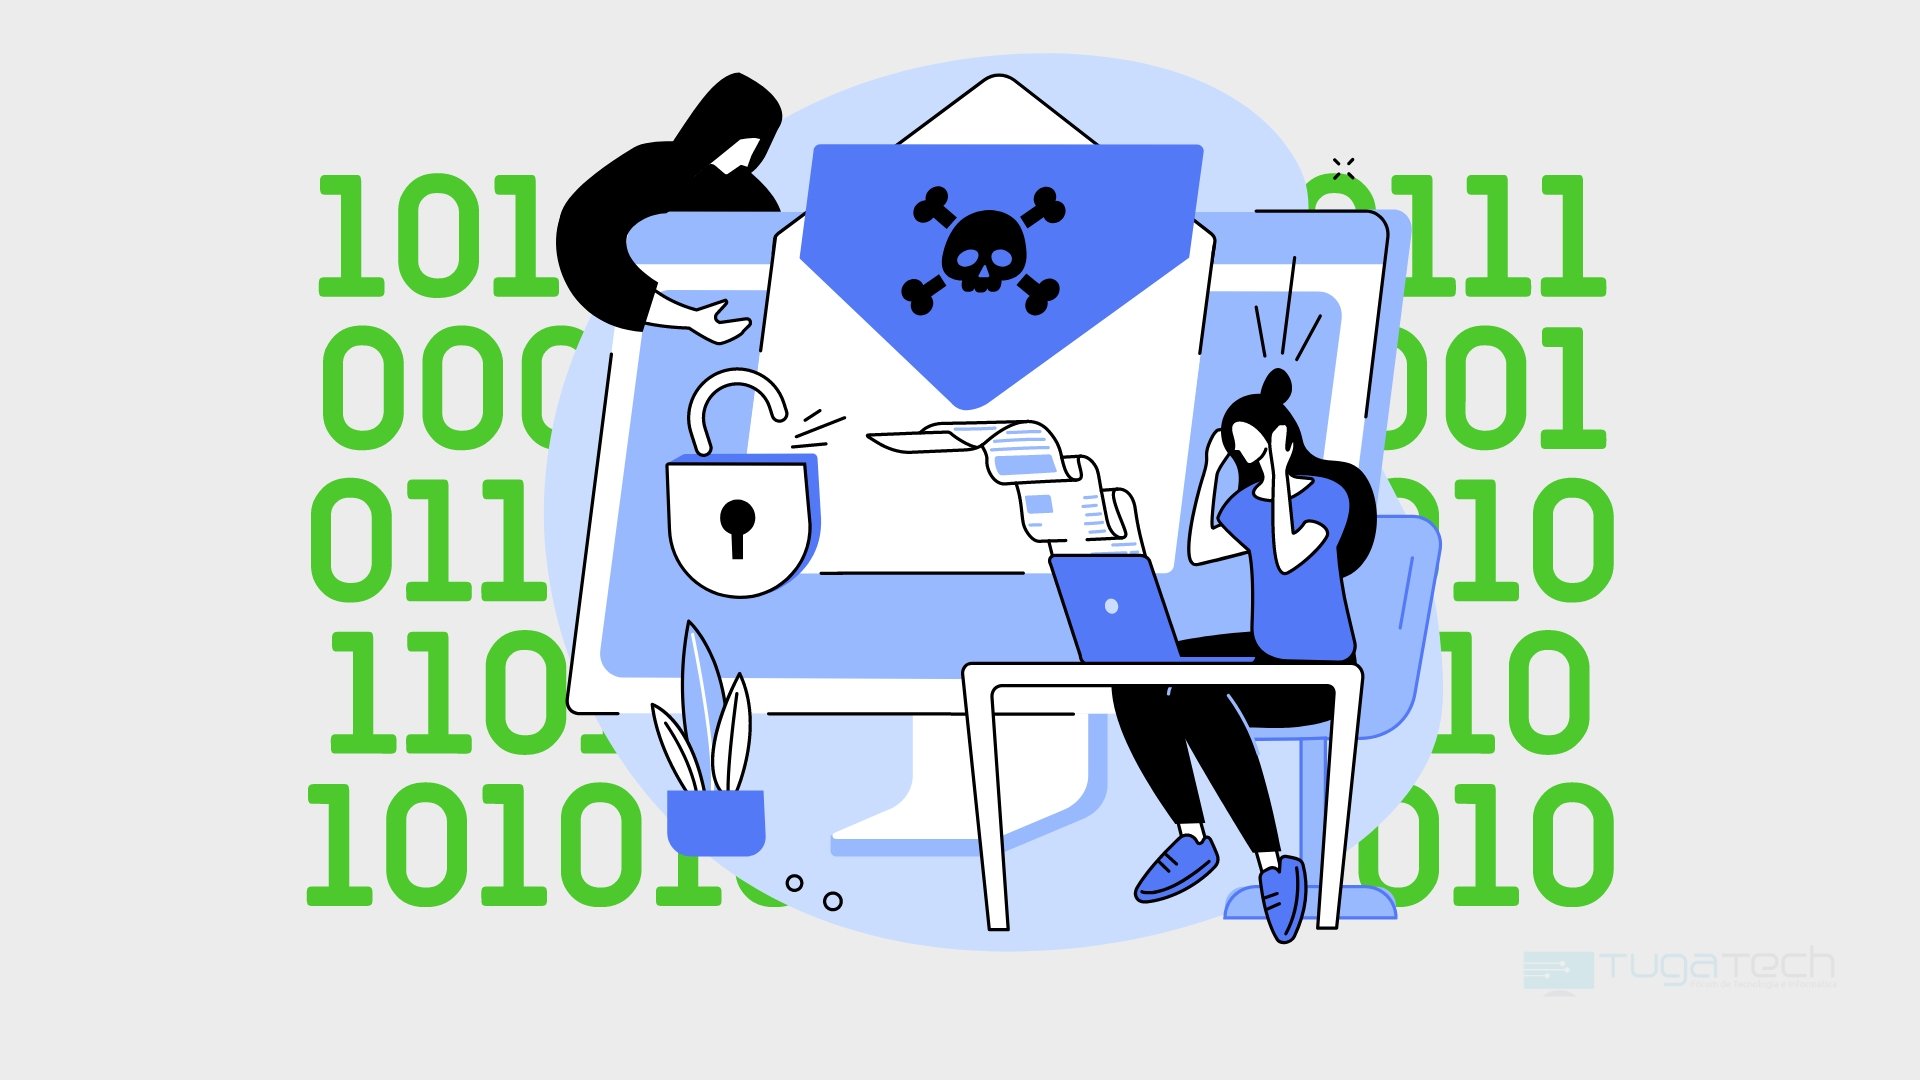 malware a roubar informações privadas